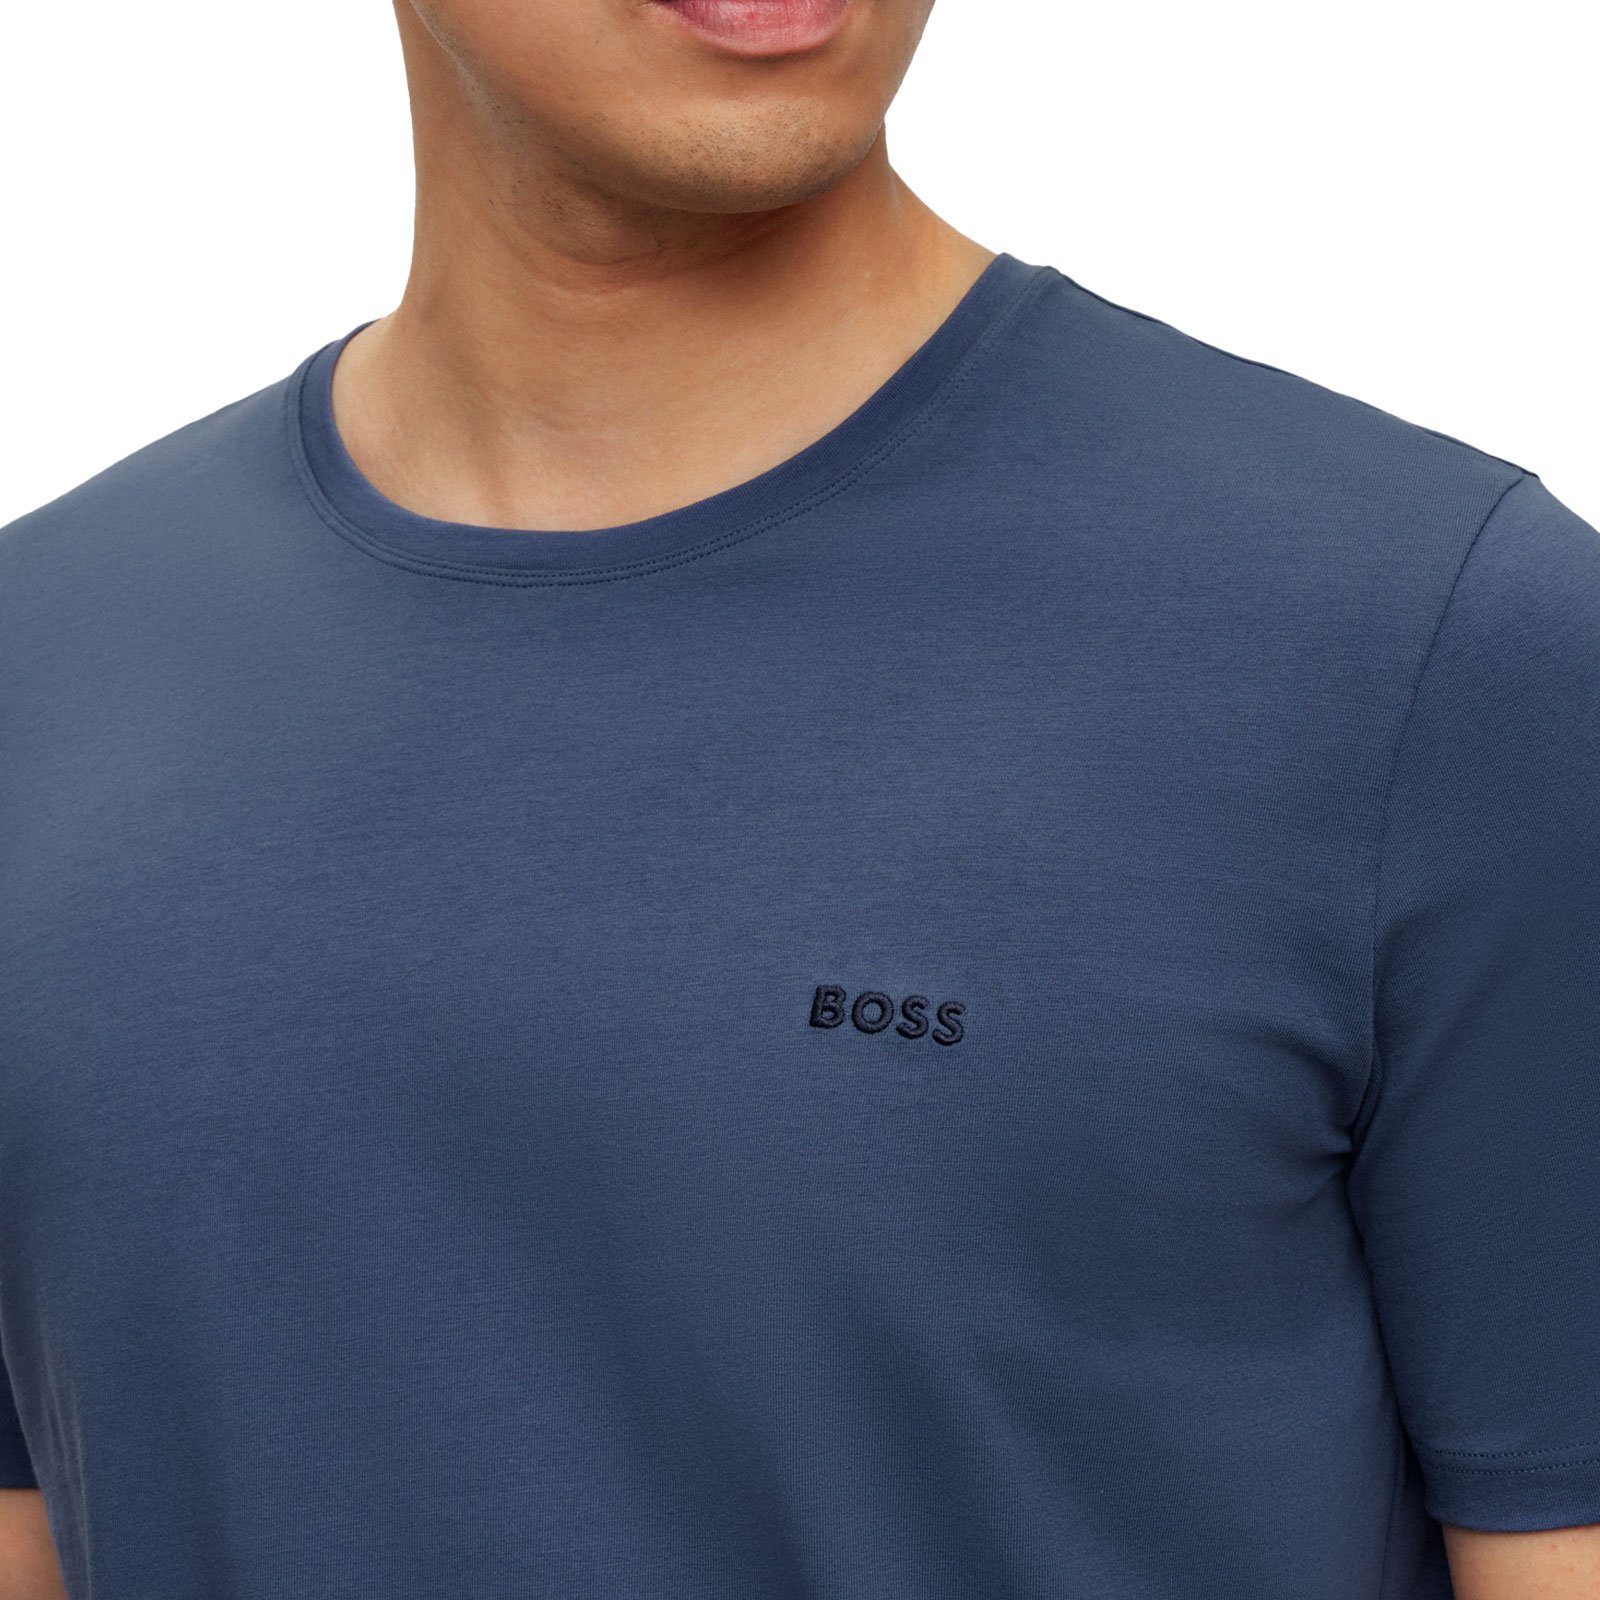 BOSS R der auf T-Shirt blue T-Shirt Brust gesticktem 475 mit Logo Mix&Match open